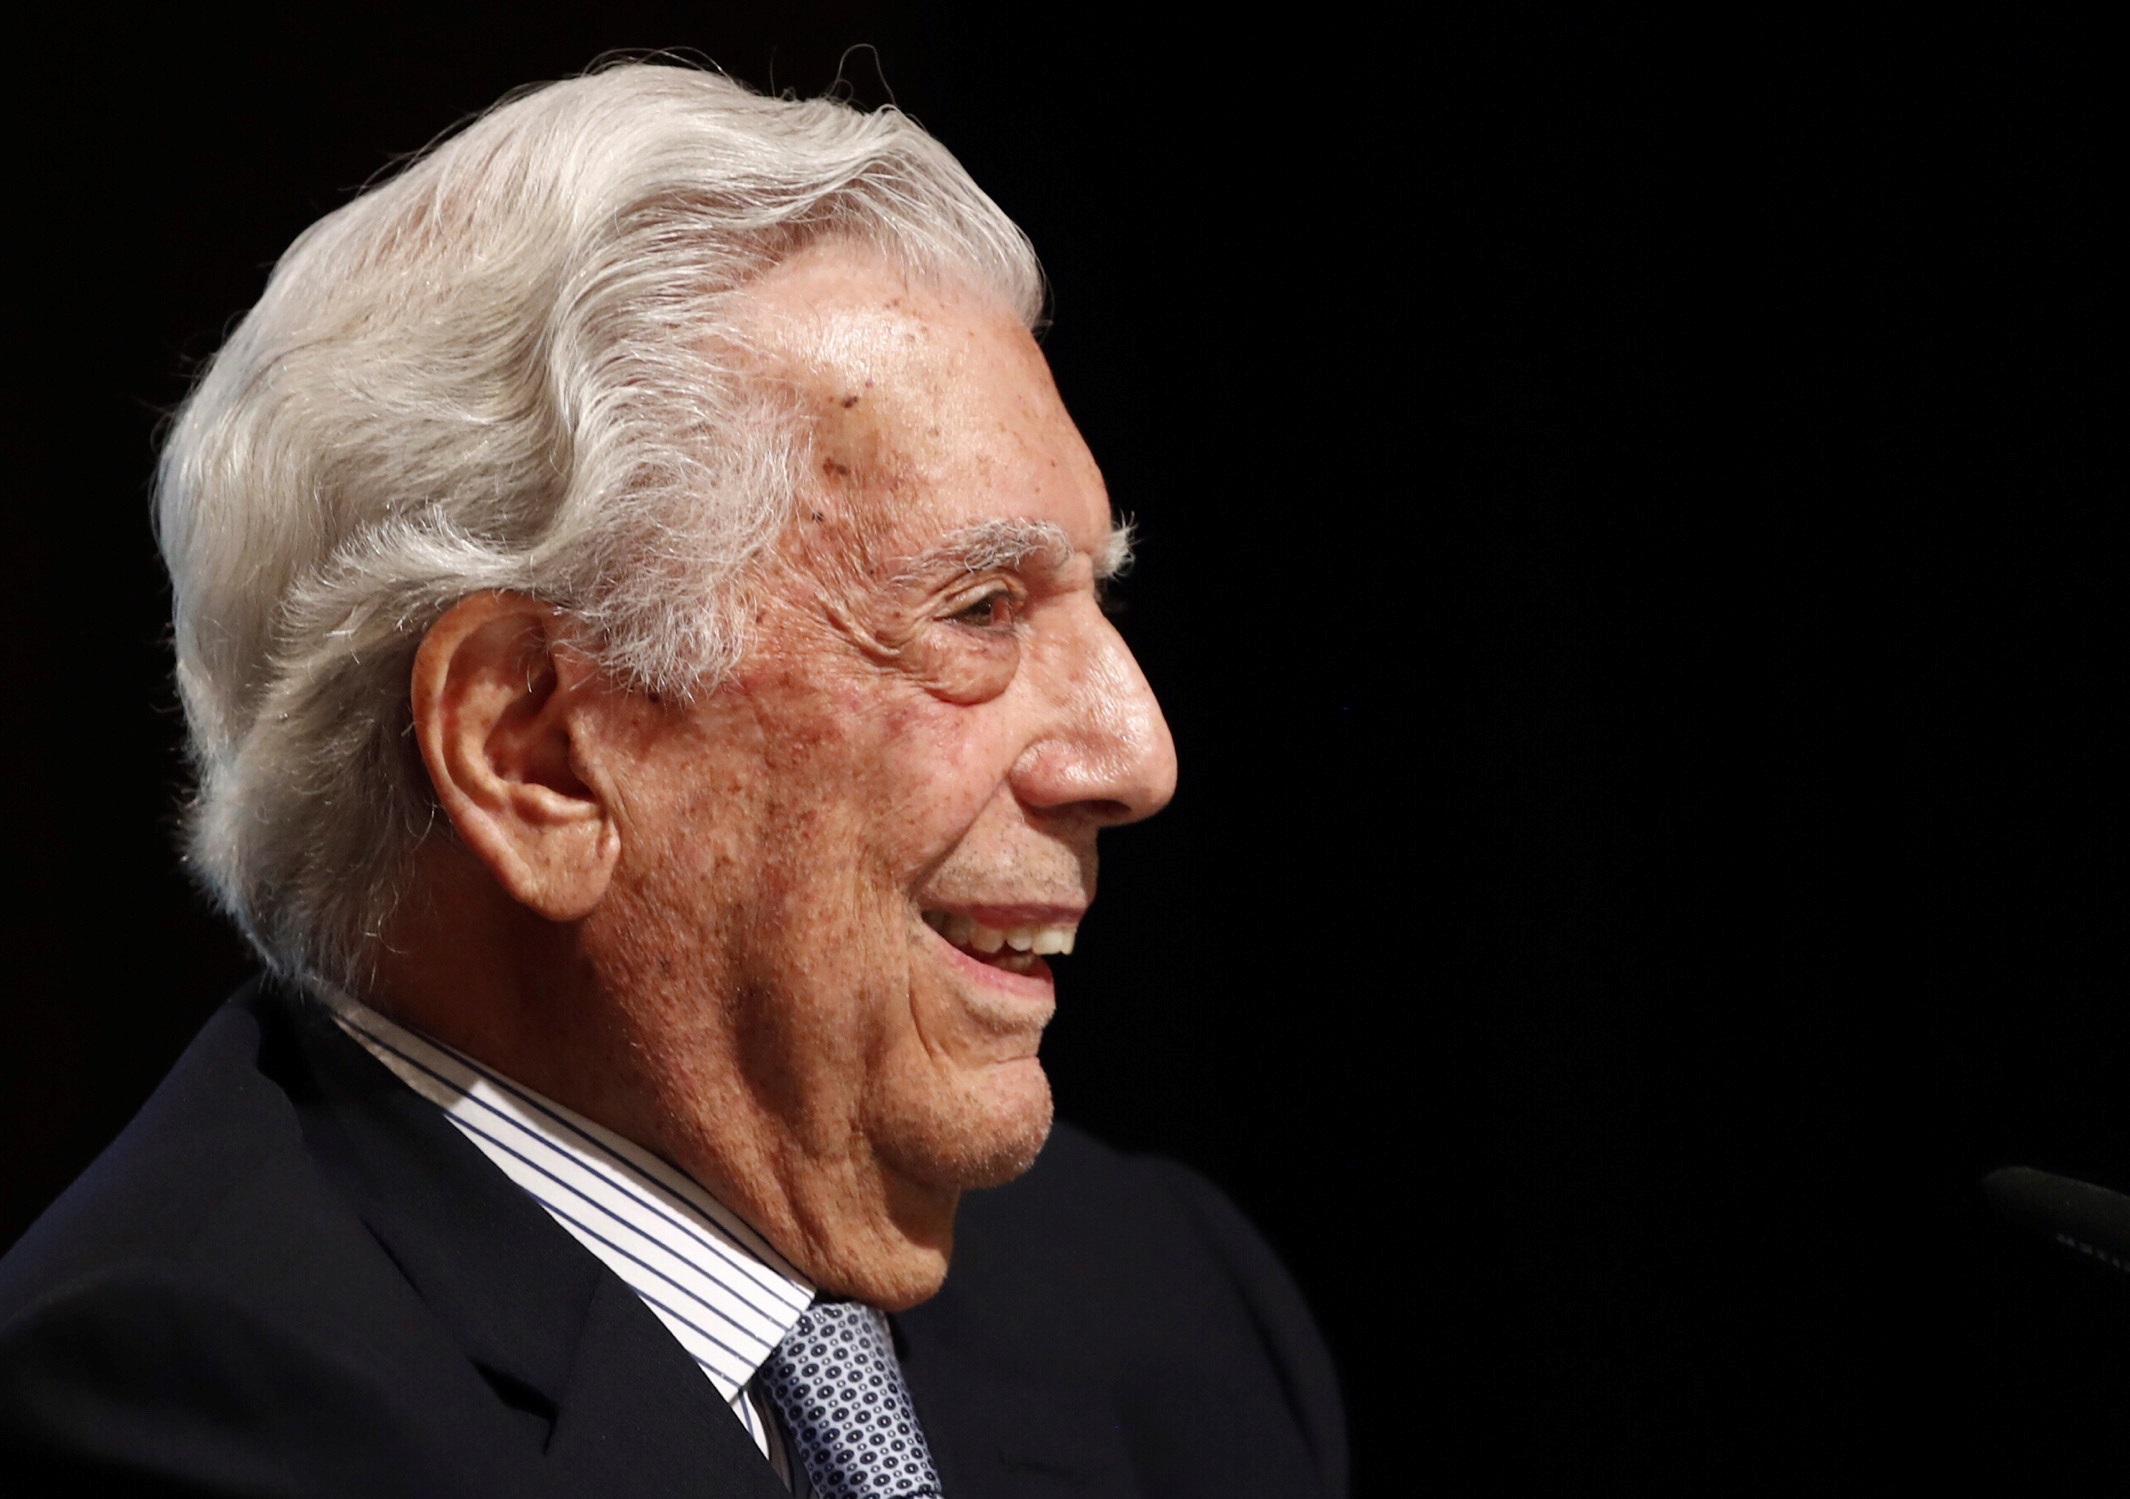 Mario Vargas Llosa, autor de obras enormes como "La fiesta del Chivo", "Conversación en La Catedral" y "La guerra del fin del mundo", cumple 85 años. (Foto: Javier López/EFE)
